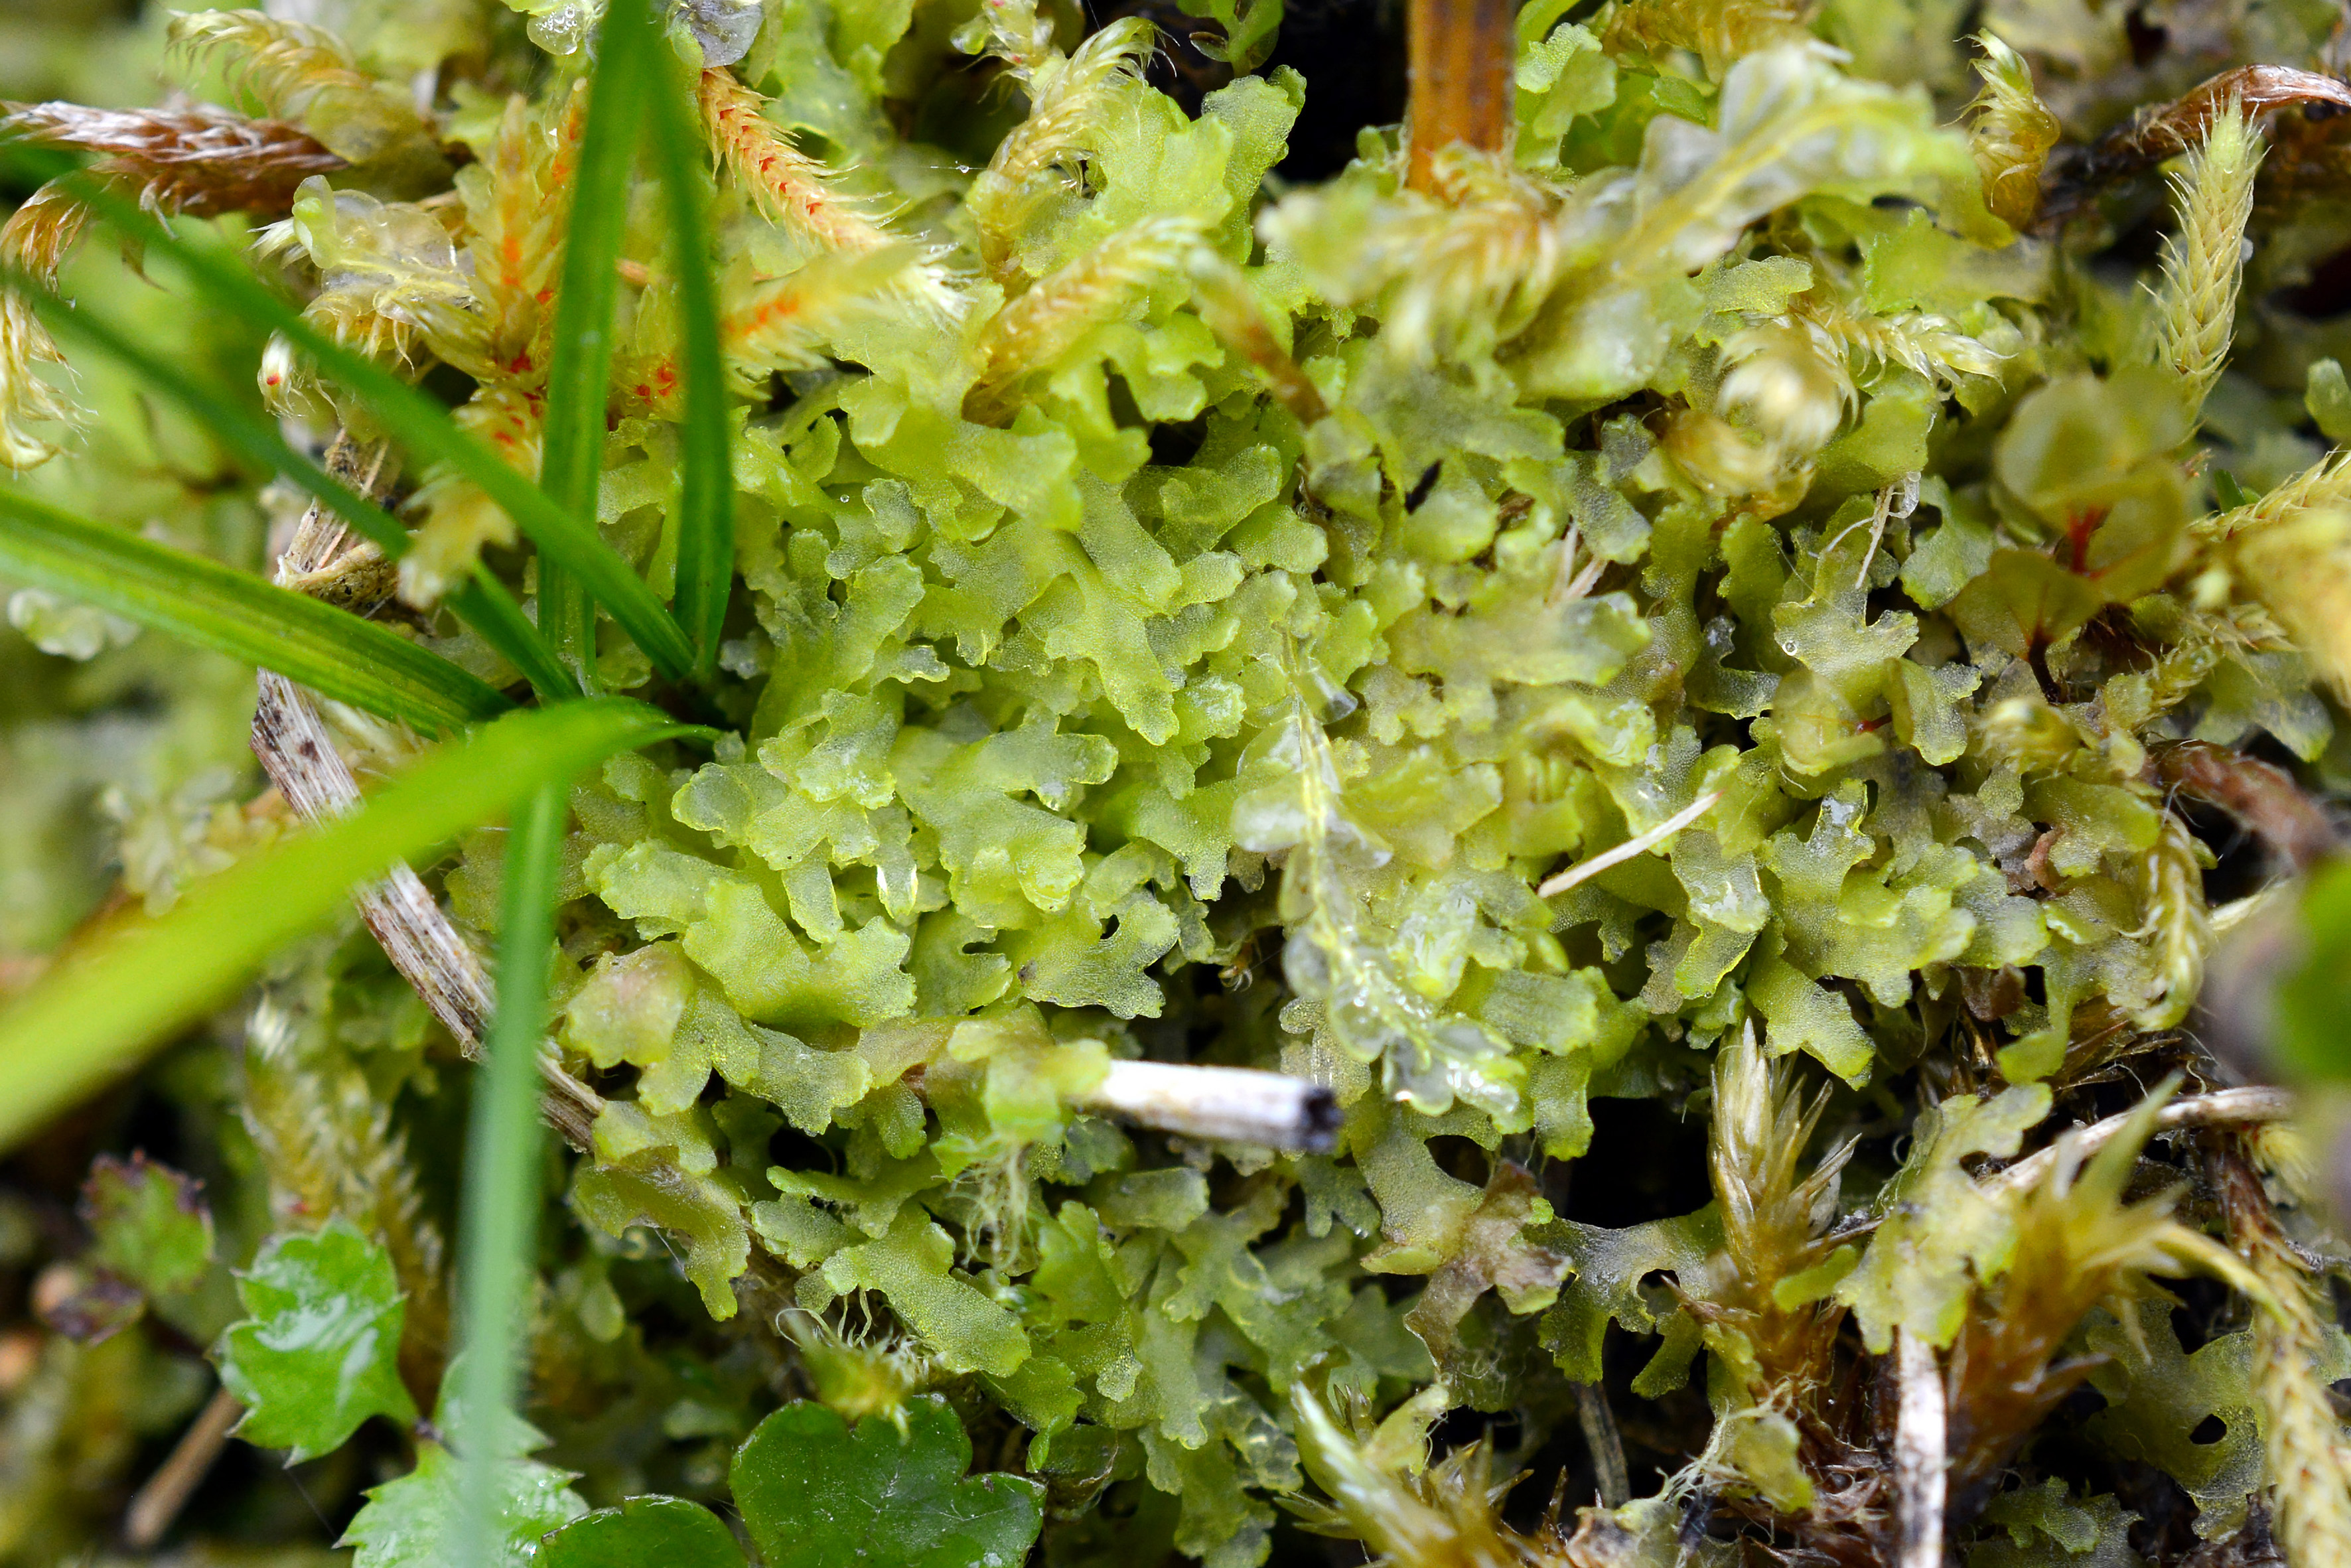 Riccardia chamedryfolia (With.) Grolle среди мохообразных в понижении на мохово-осоковом болоте. Фото К.Г. Климовой.